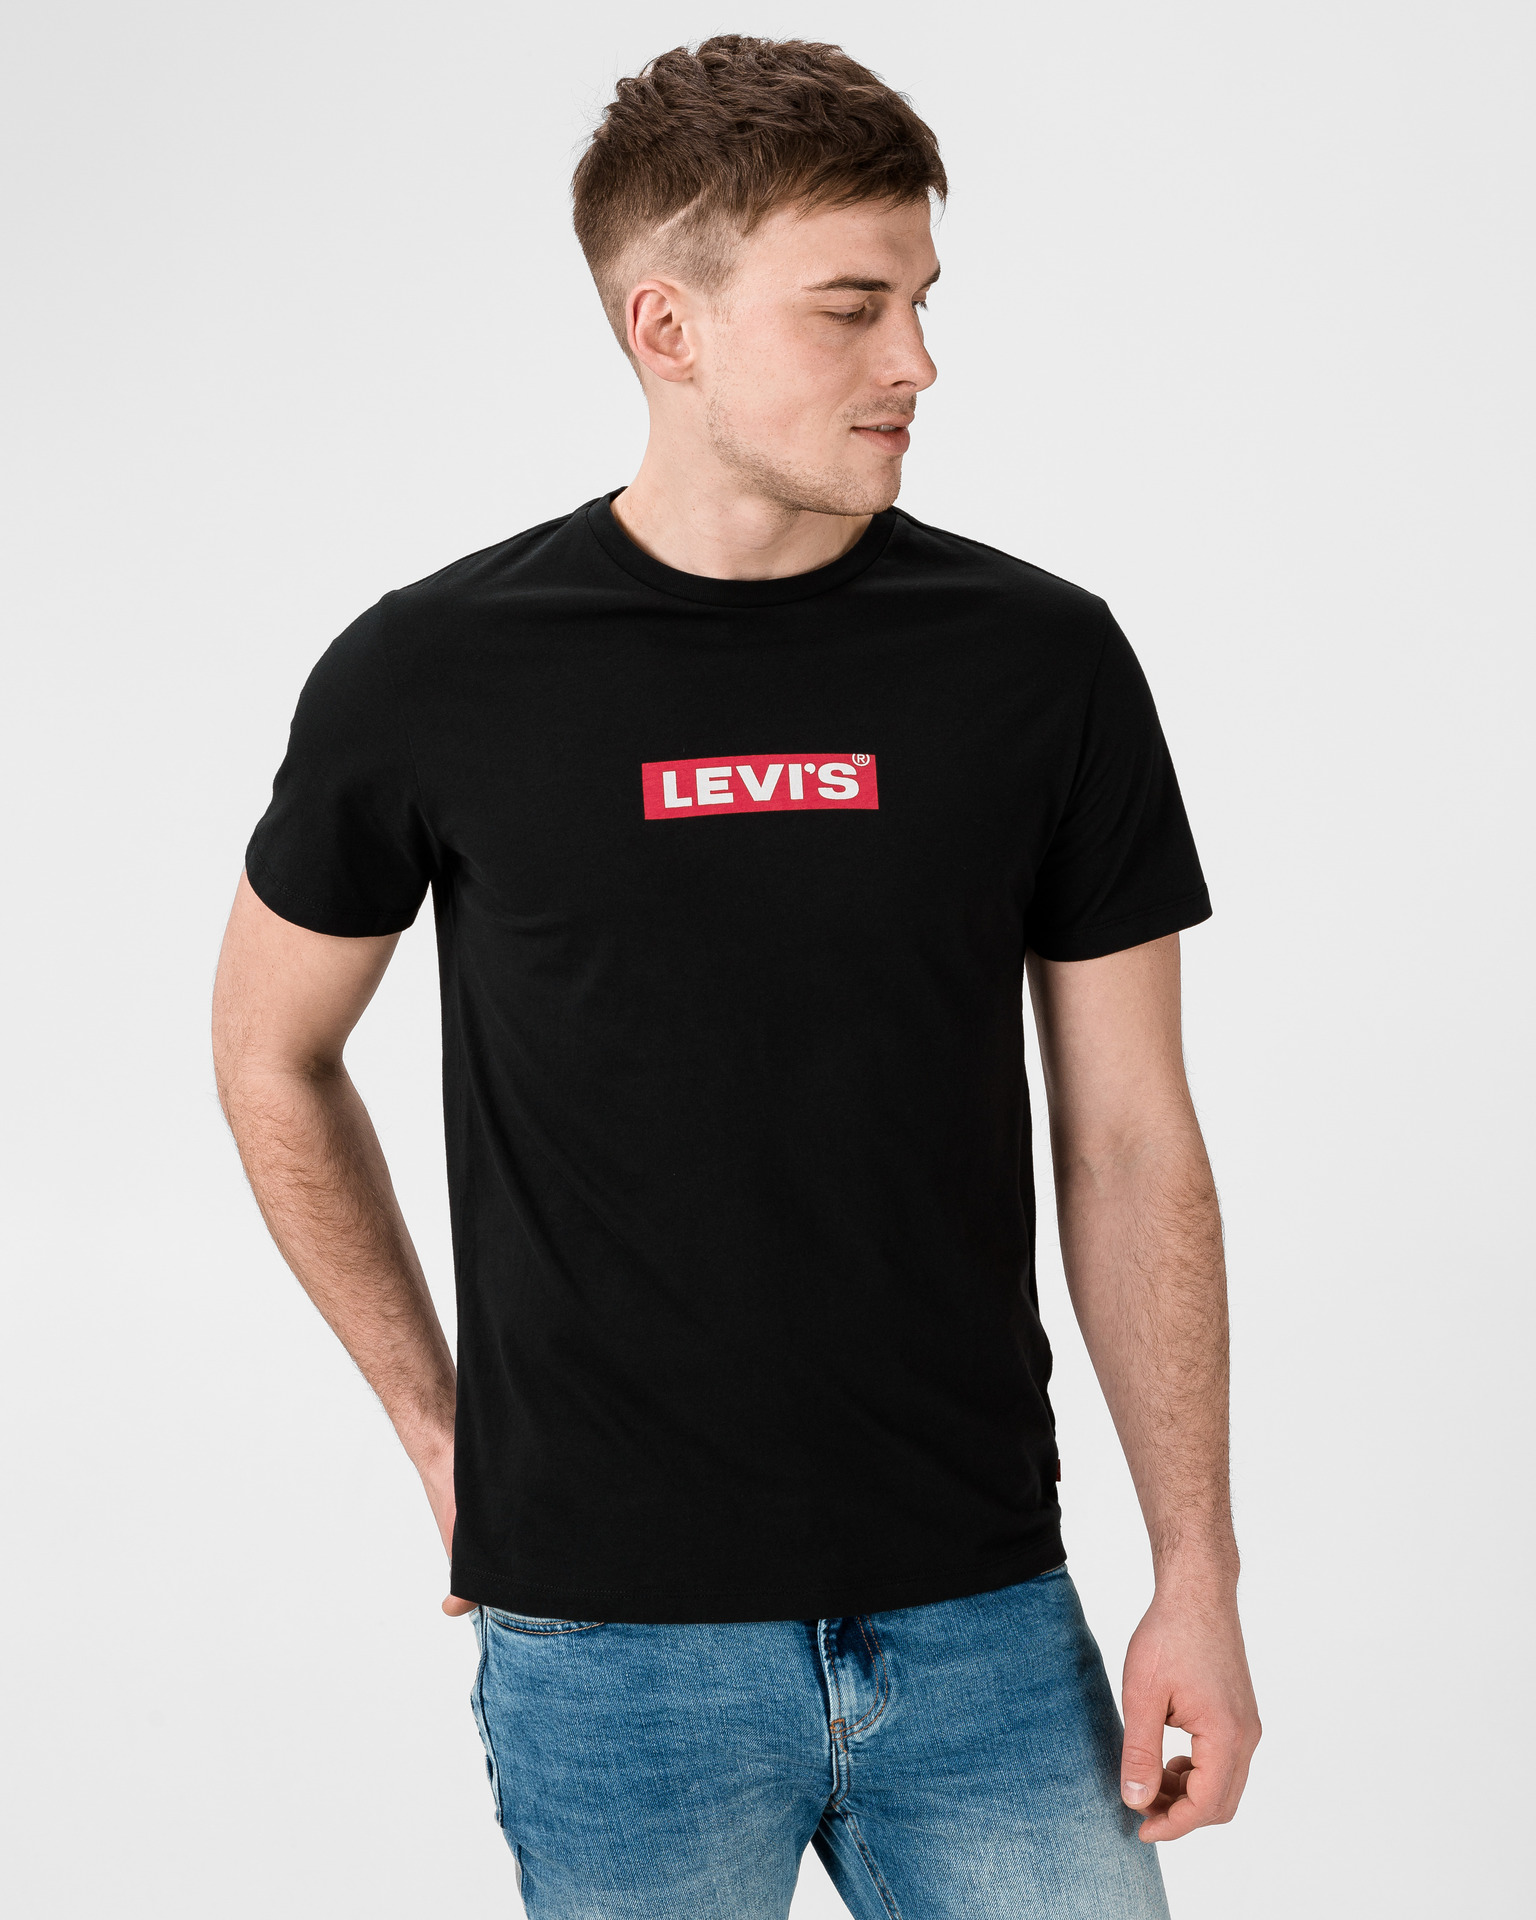 Купить футболку levis. Levi's футболка. Майка левайс мужские. Levis St Petersburg футболка. Levis футболка мужская черная.